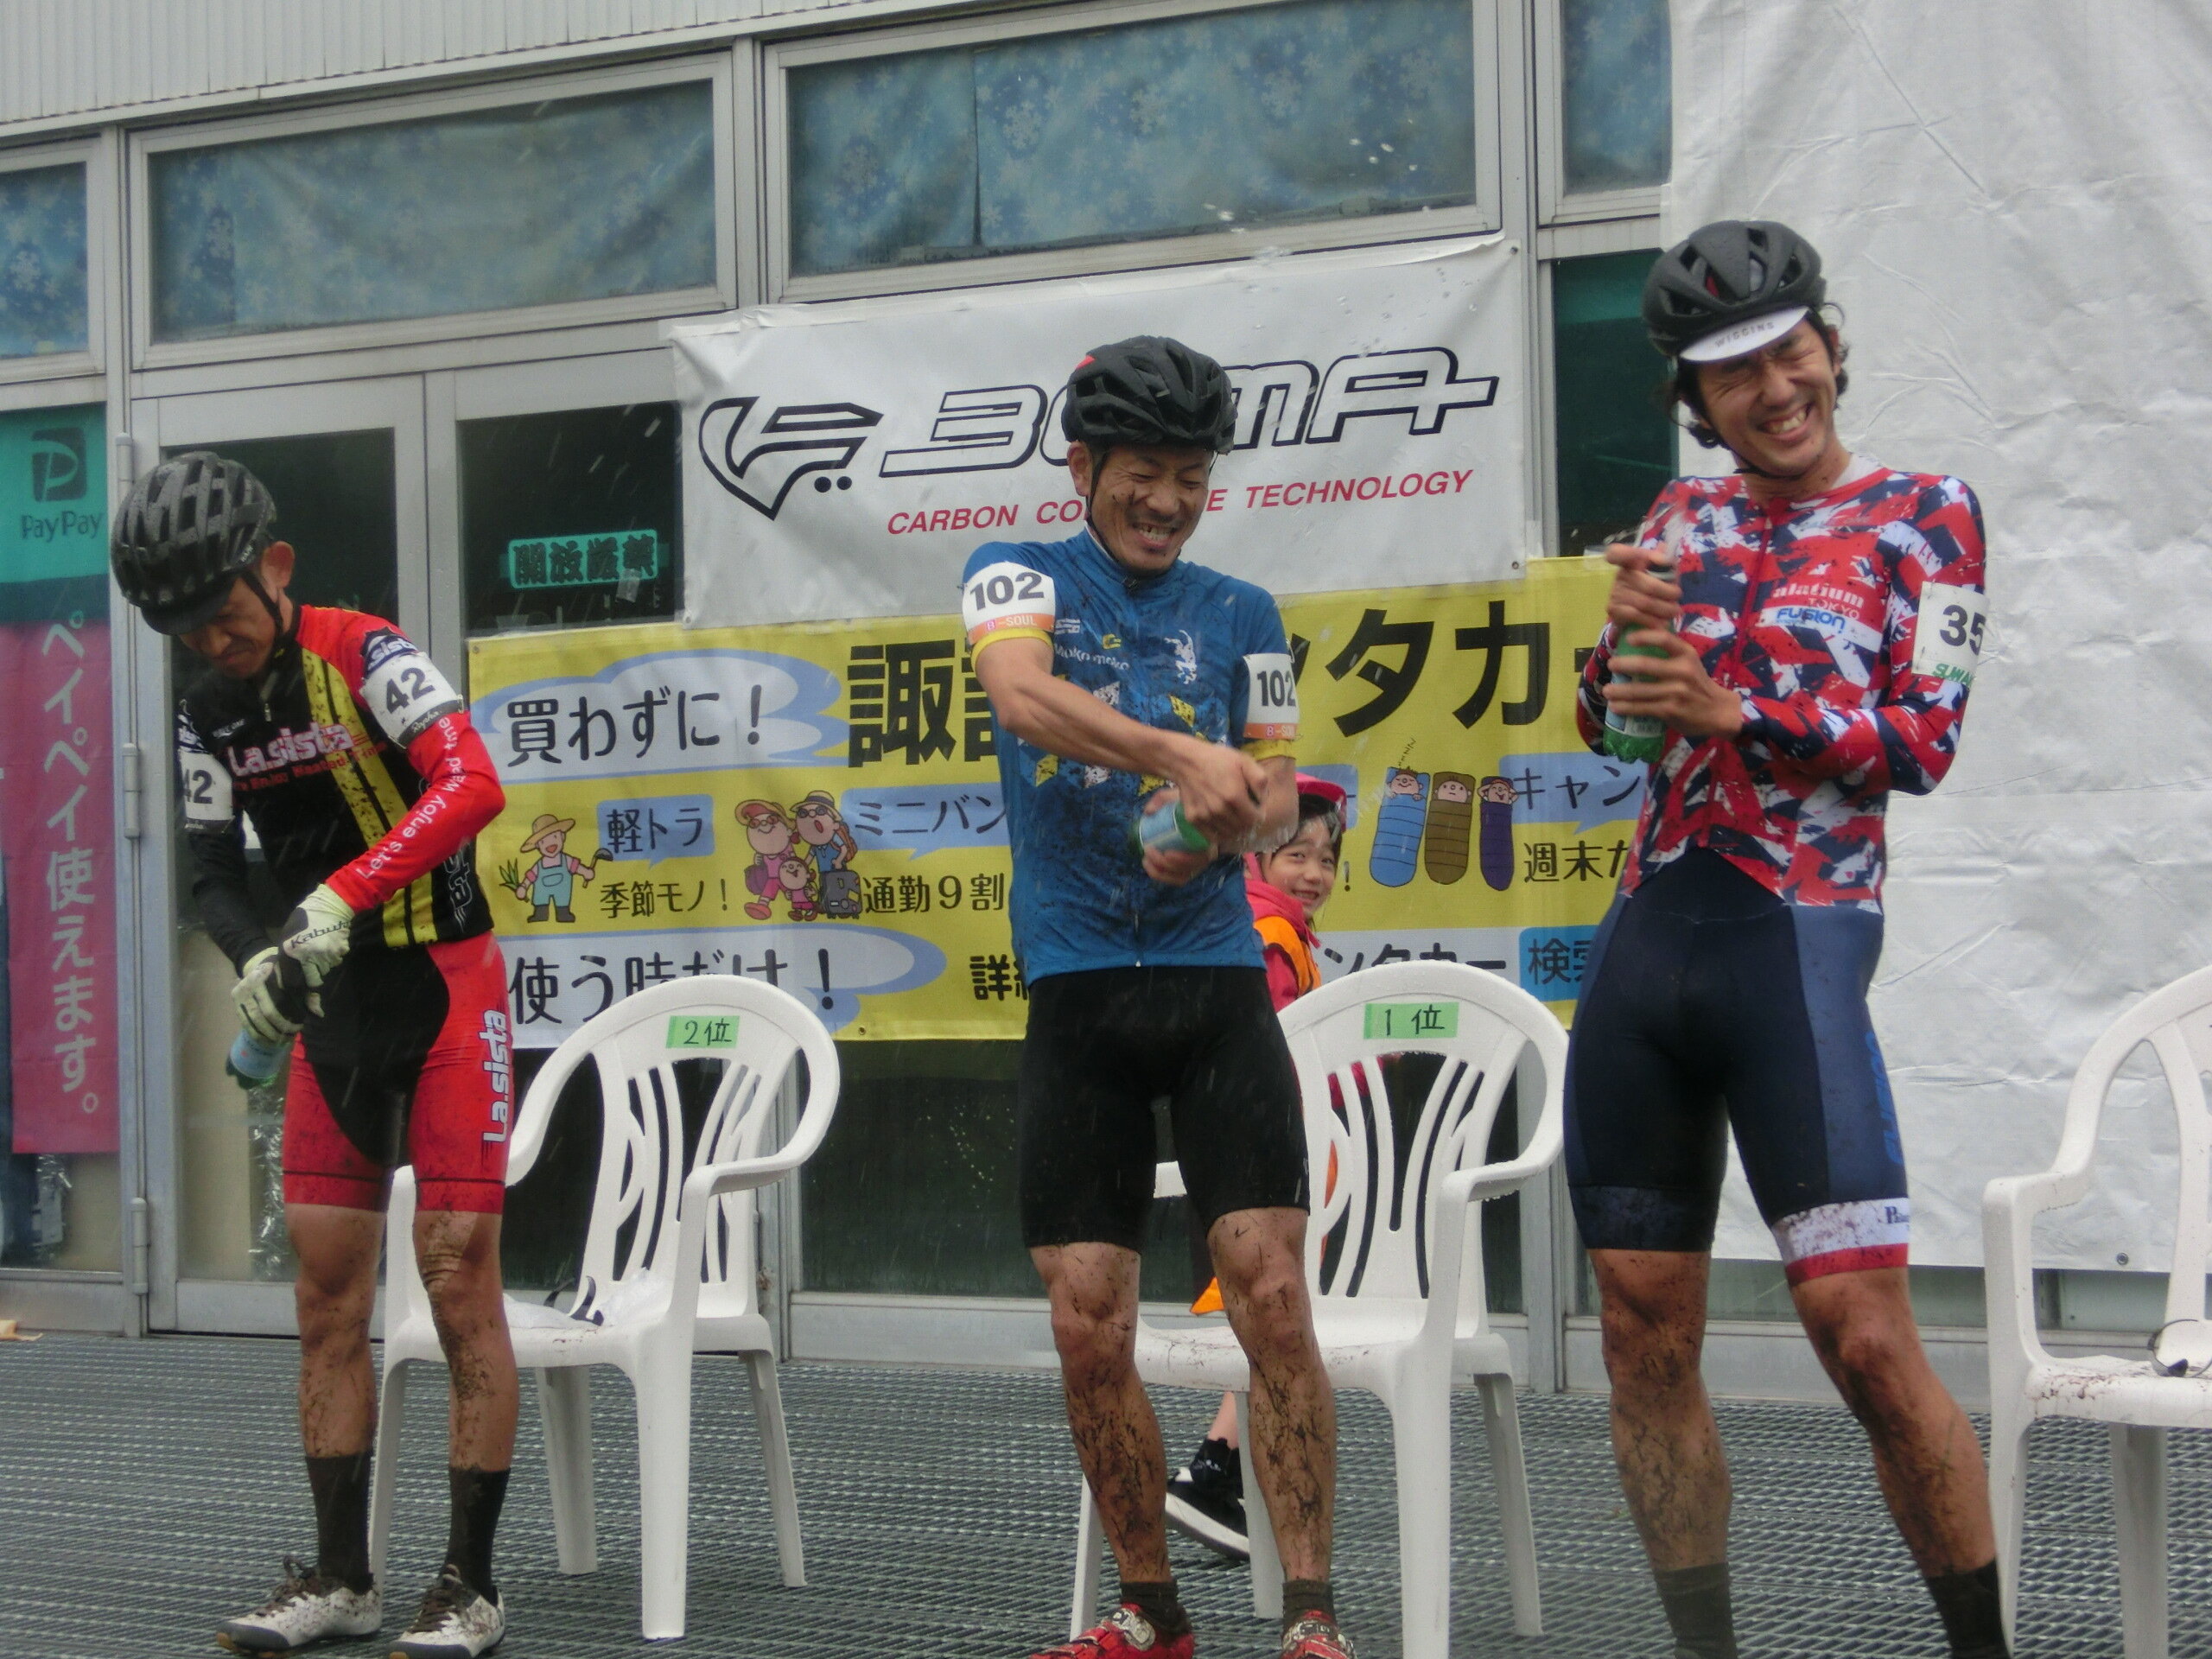 https://www.cyclocross.jp/news/951a74c4ed7cccf136dcf29b8d1026baac0d81f0.JPG